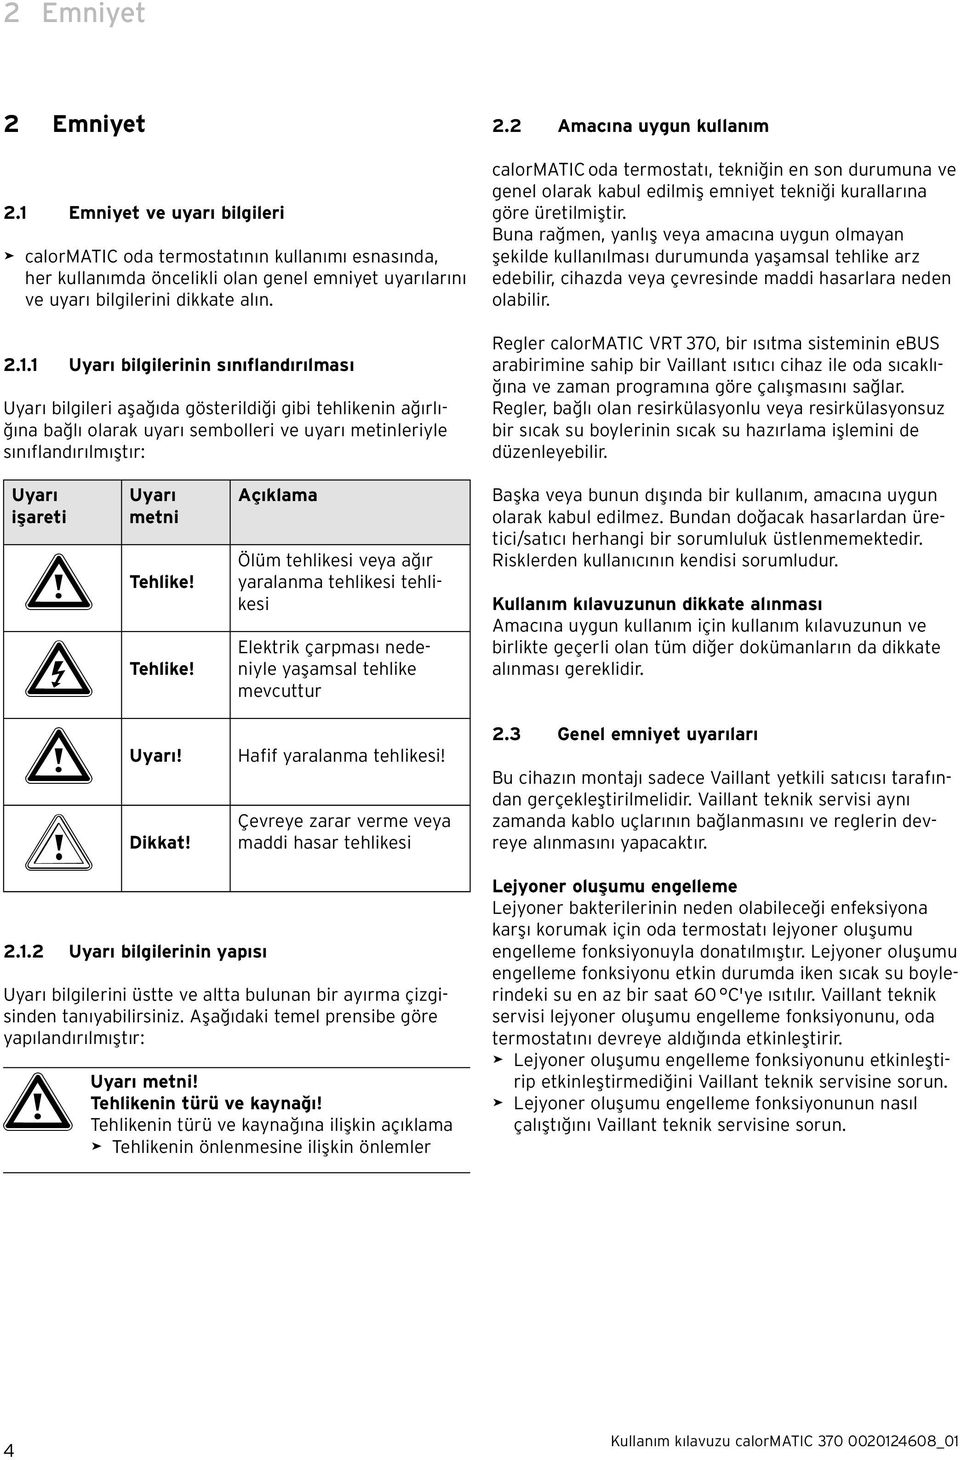 1 Uyarı bilgilerinin sınıflandırılması Uyarı bilgileri aşağıda gösterildiği gibi tehlikenin ağırlığına bağlı olarak uyarı sembolleri ve uyarı metinleriyle sınıflandırılmıştır: Uyarı işareti Uyarı